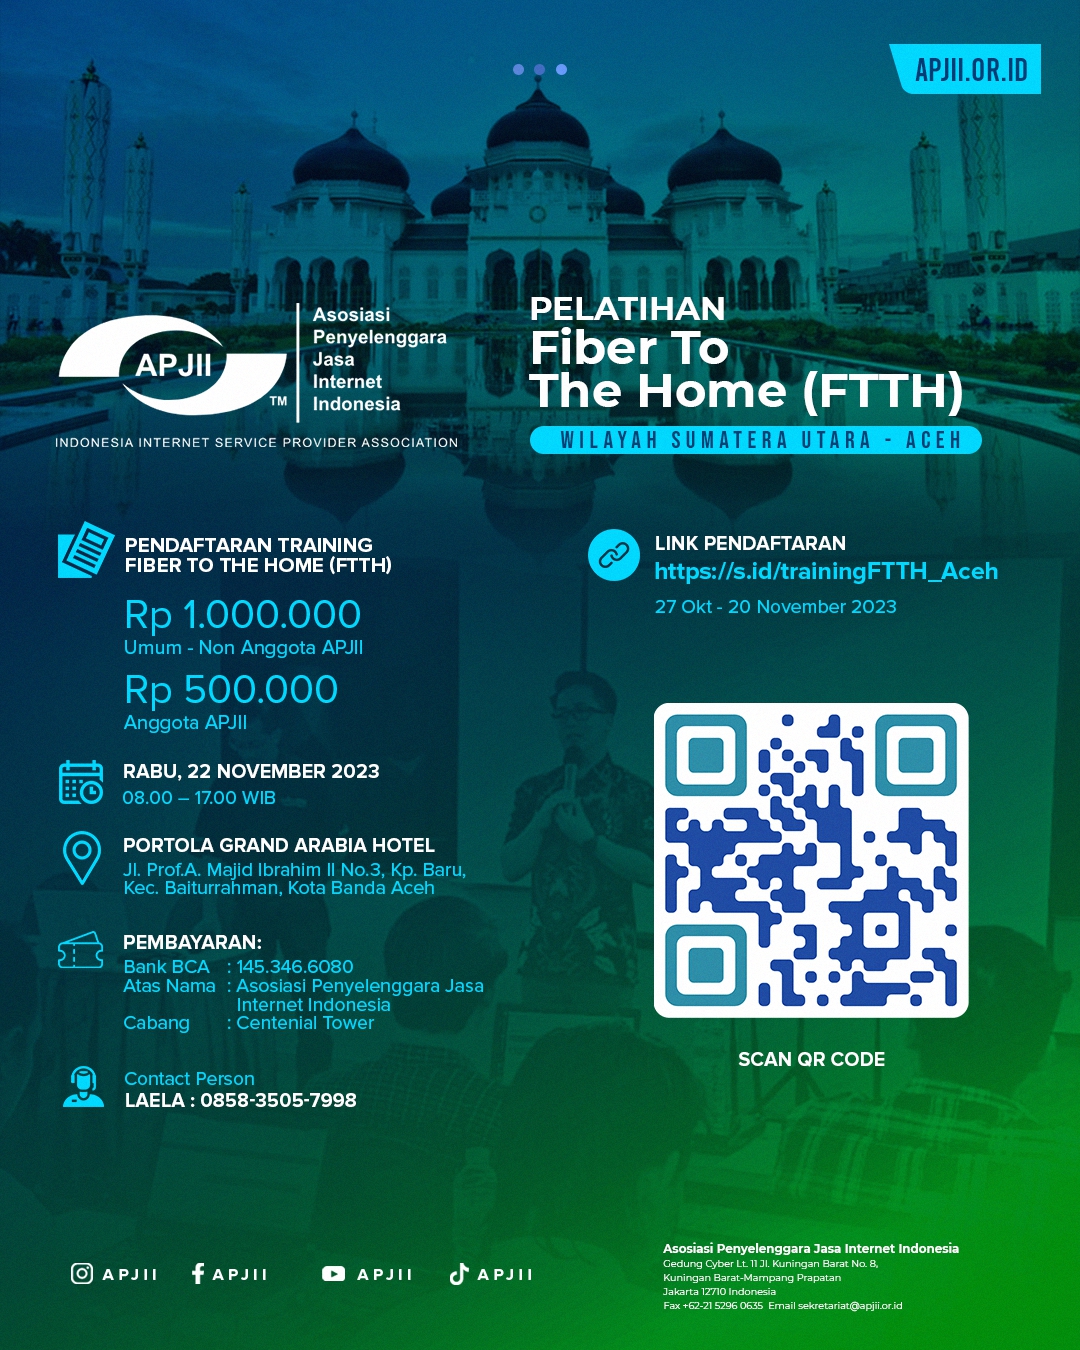 Pelatihan Fiber To The Home (FTTH) di Wilayah Sumatera Utara - Aceh